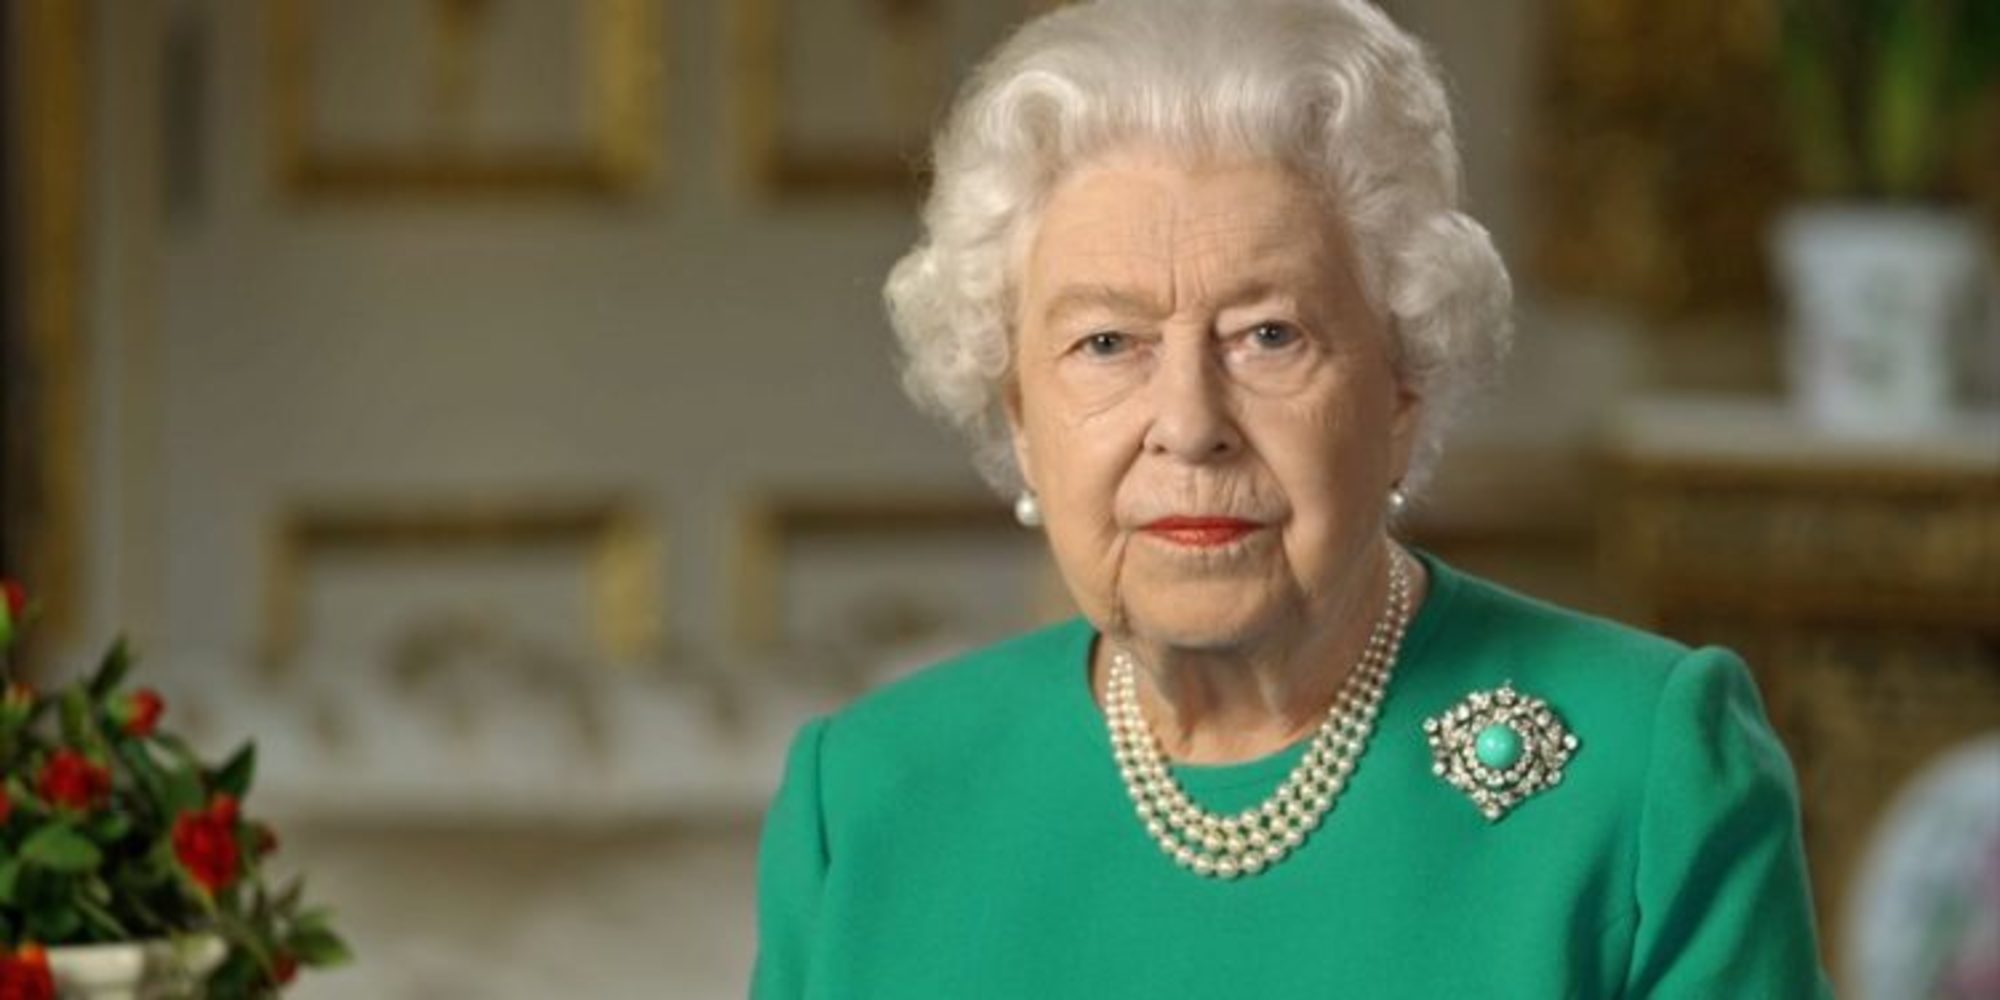 Hombre armado con una ballesta intentó asesinar a la reina Isabel II, según video